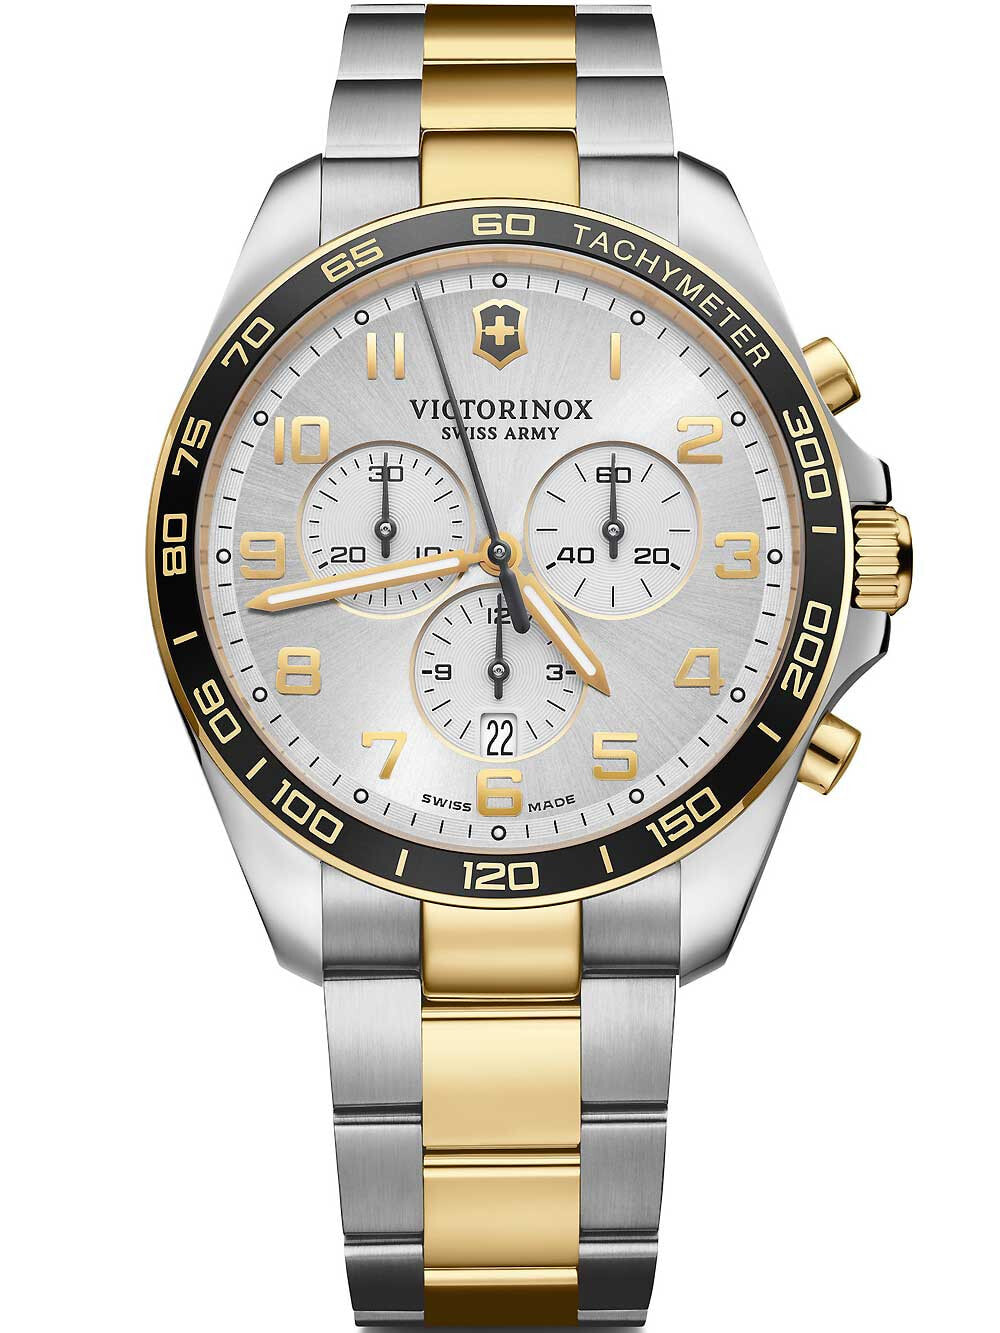 Мужские наручные часы с серебряным золотым браслетом Victorinox 241903 Fieldforce chronograph 42mm 10ATM